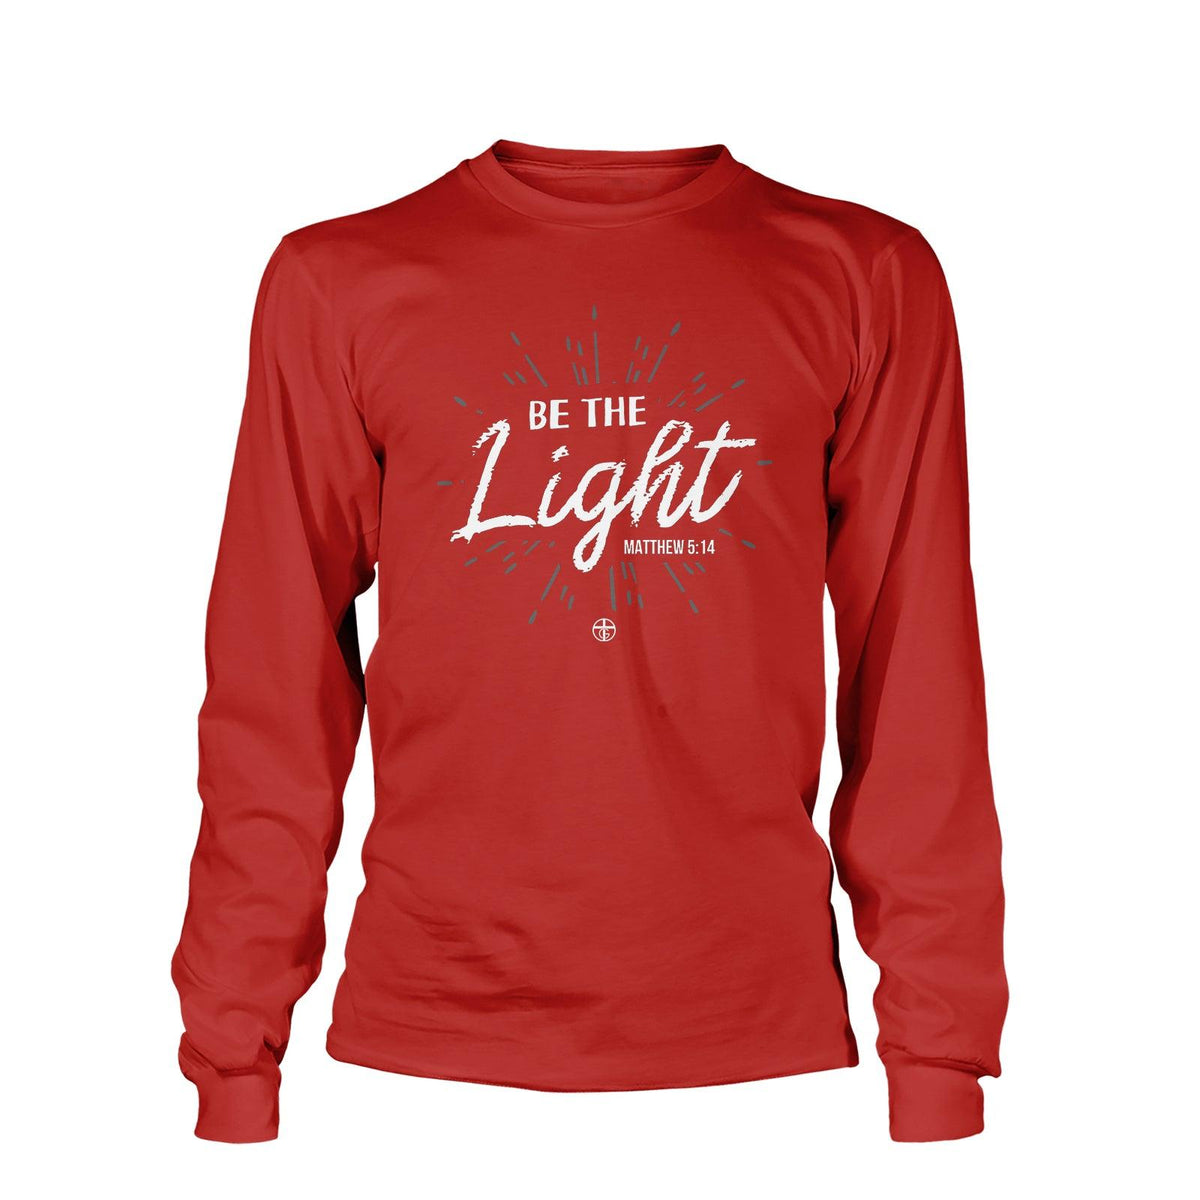 Be The Light Matt 5:14 Long Sleeve T-Shirt